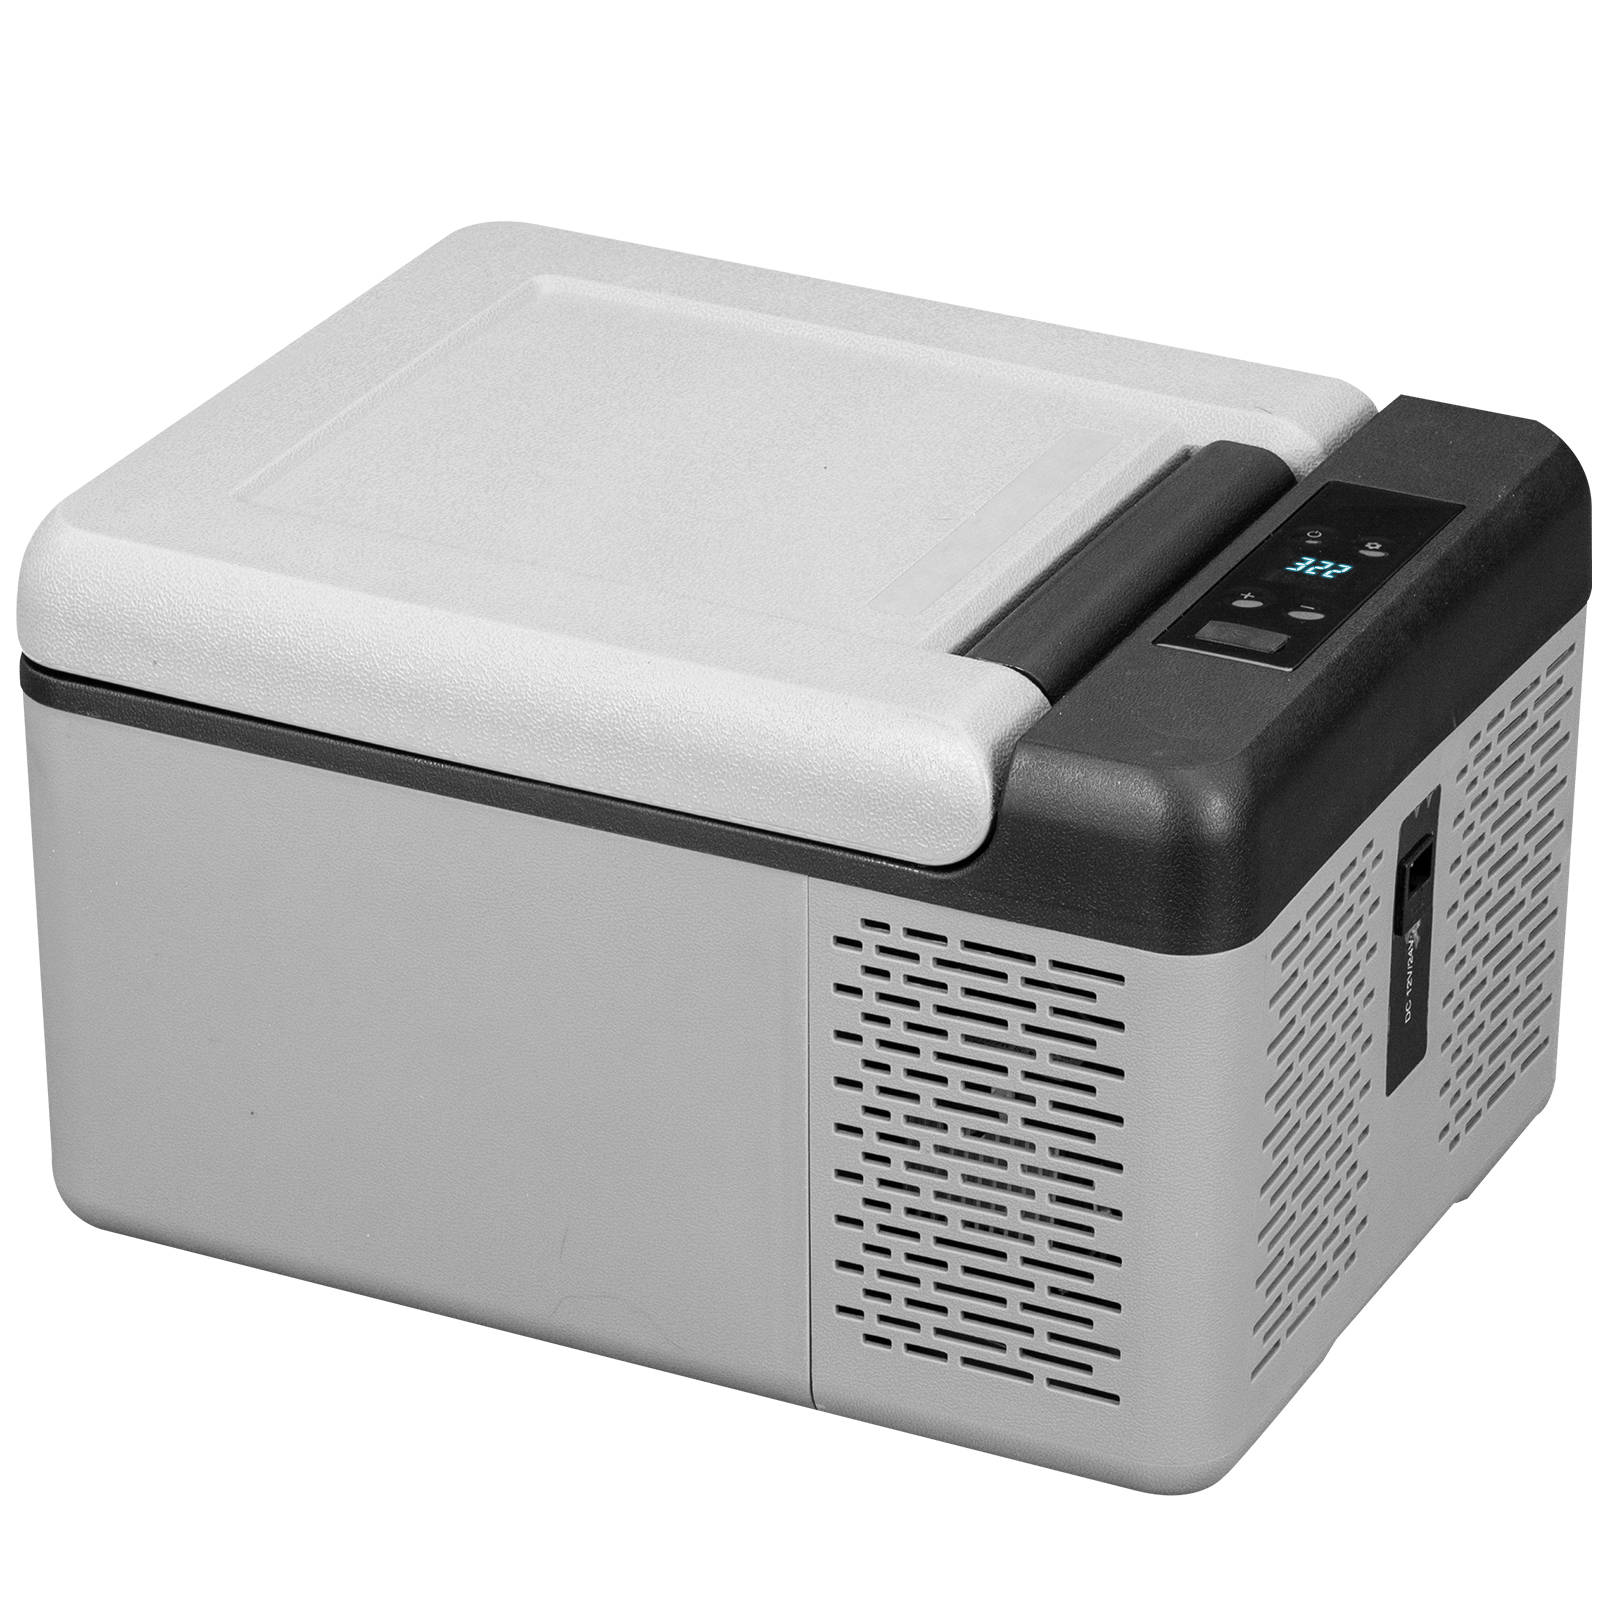 portable freezer,21 Qt,fast cooling